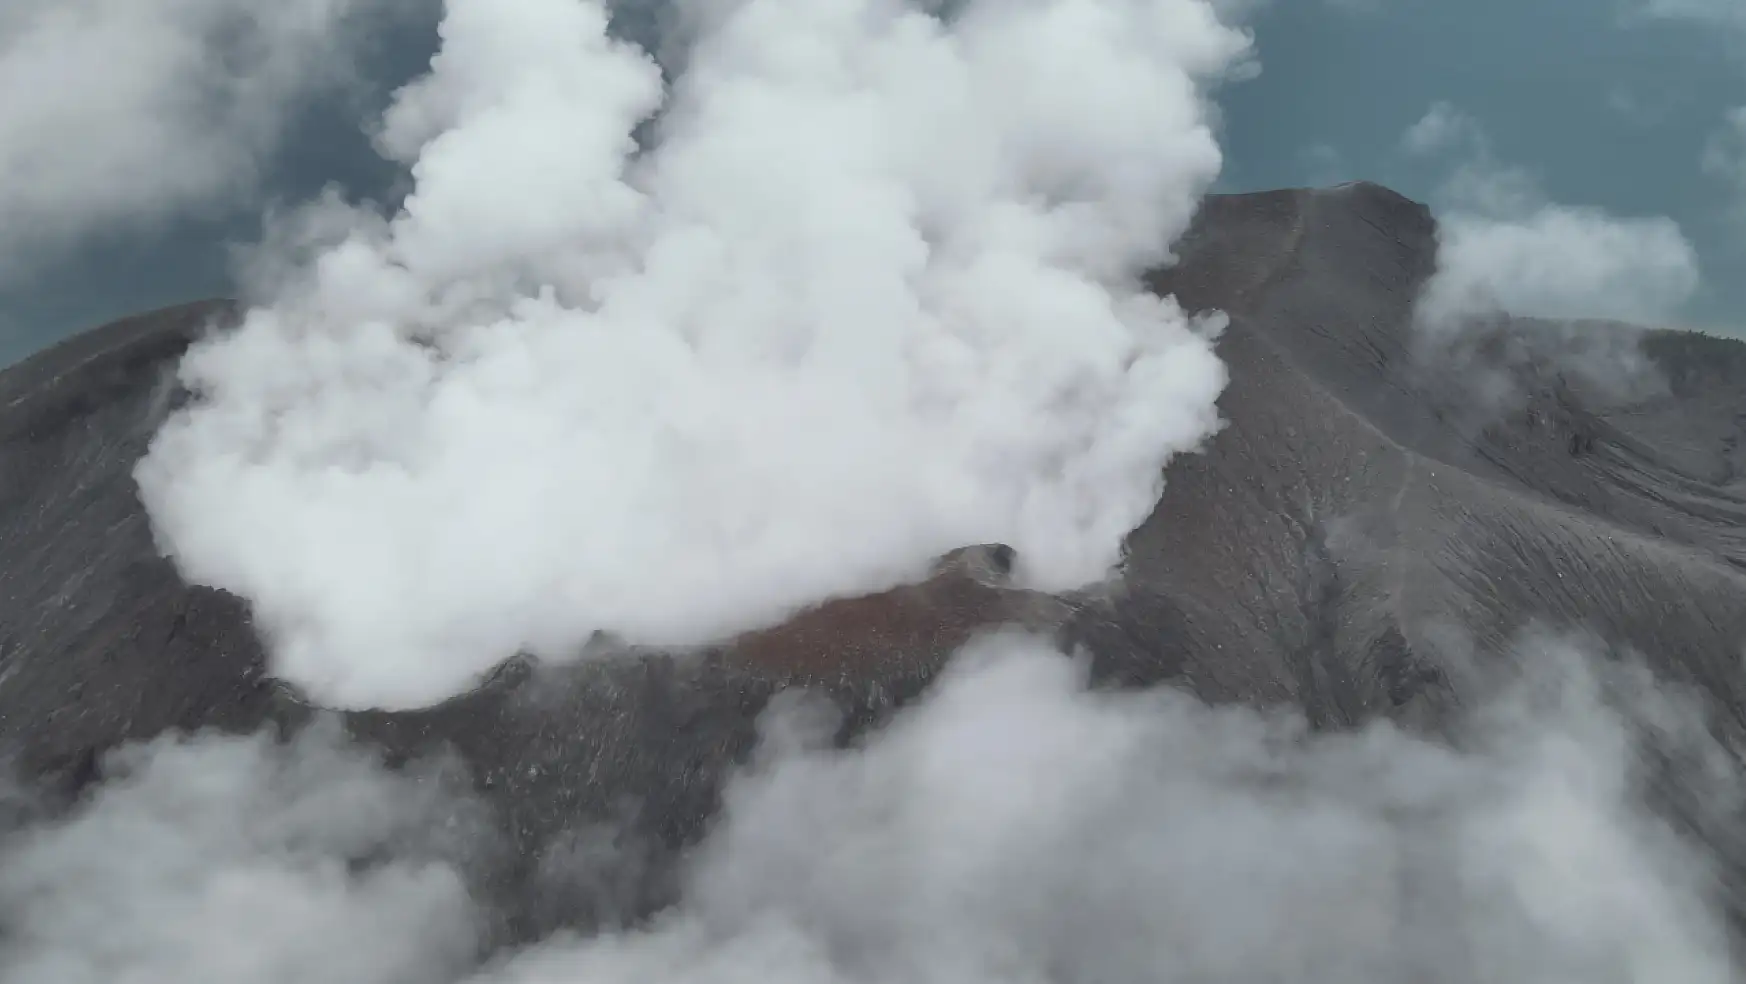 Endonezya'nın kuzeyindeki Ruang Yanardağ'nda patlama meydana geldi